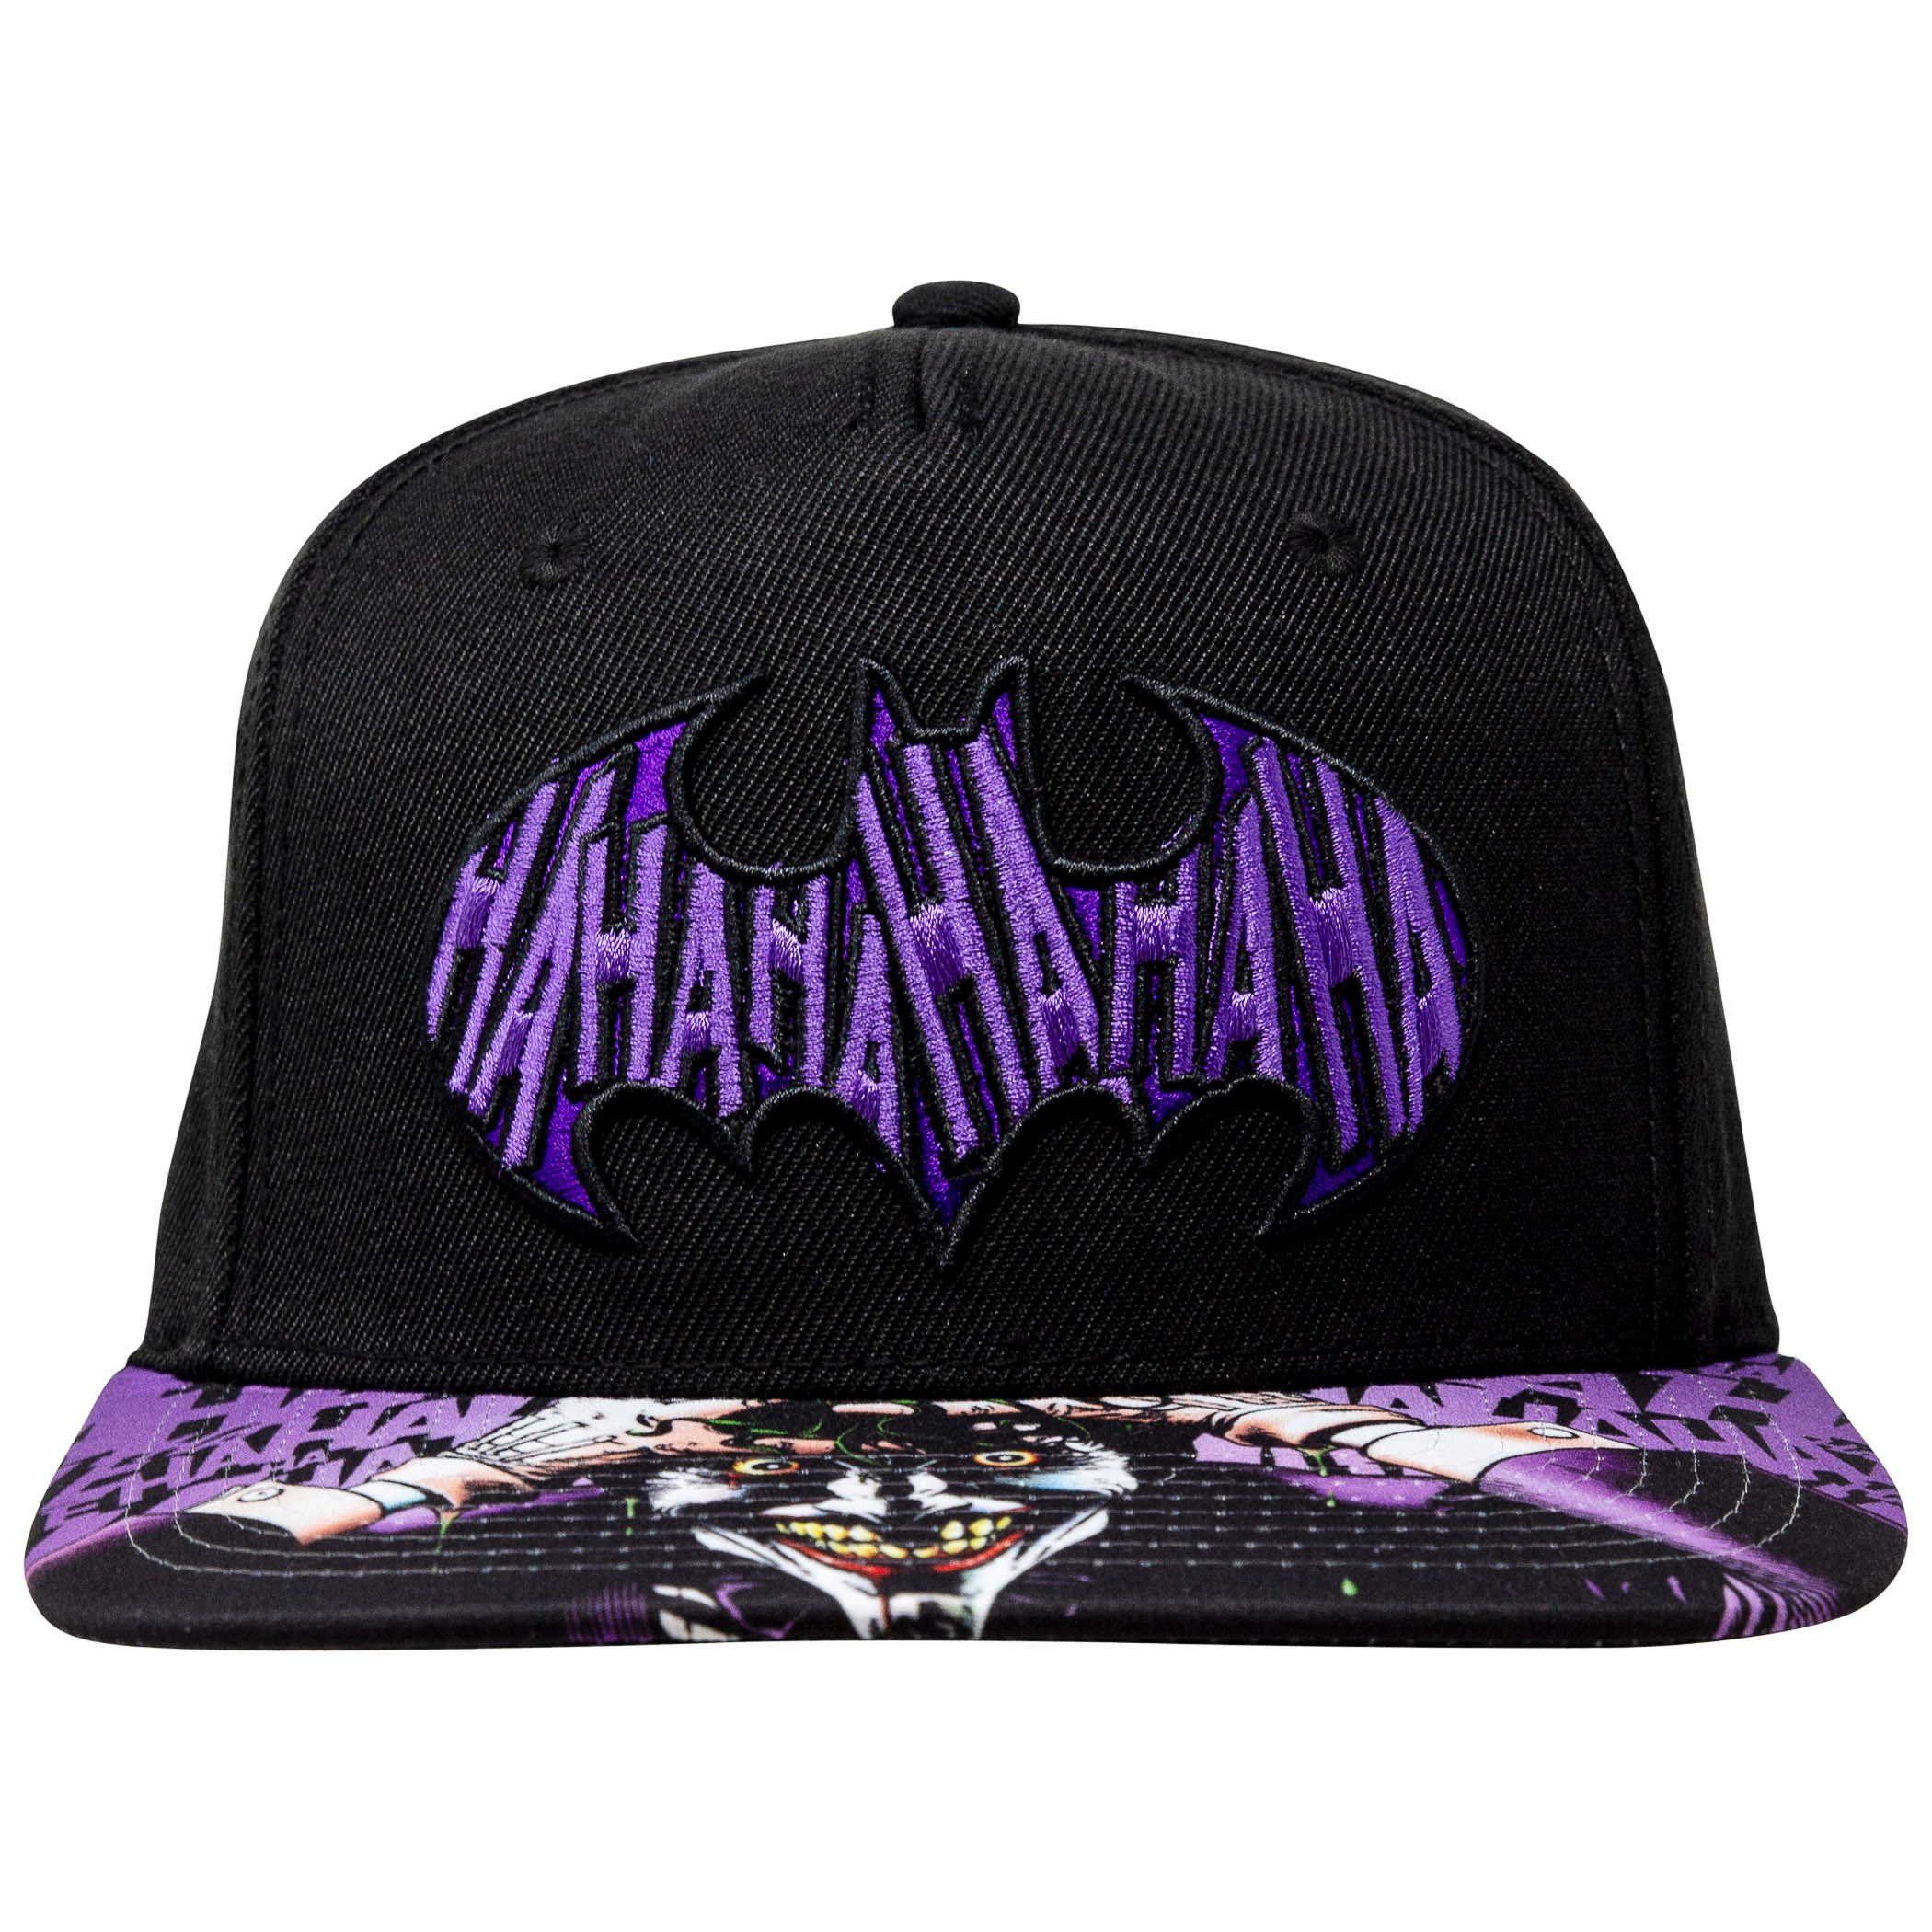 Batman Joker Sublimated Bill Black Snapback Hat